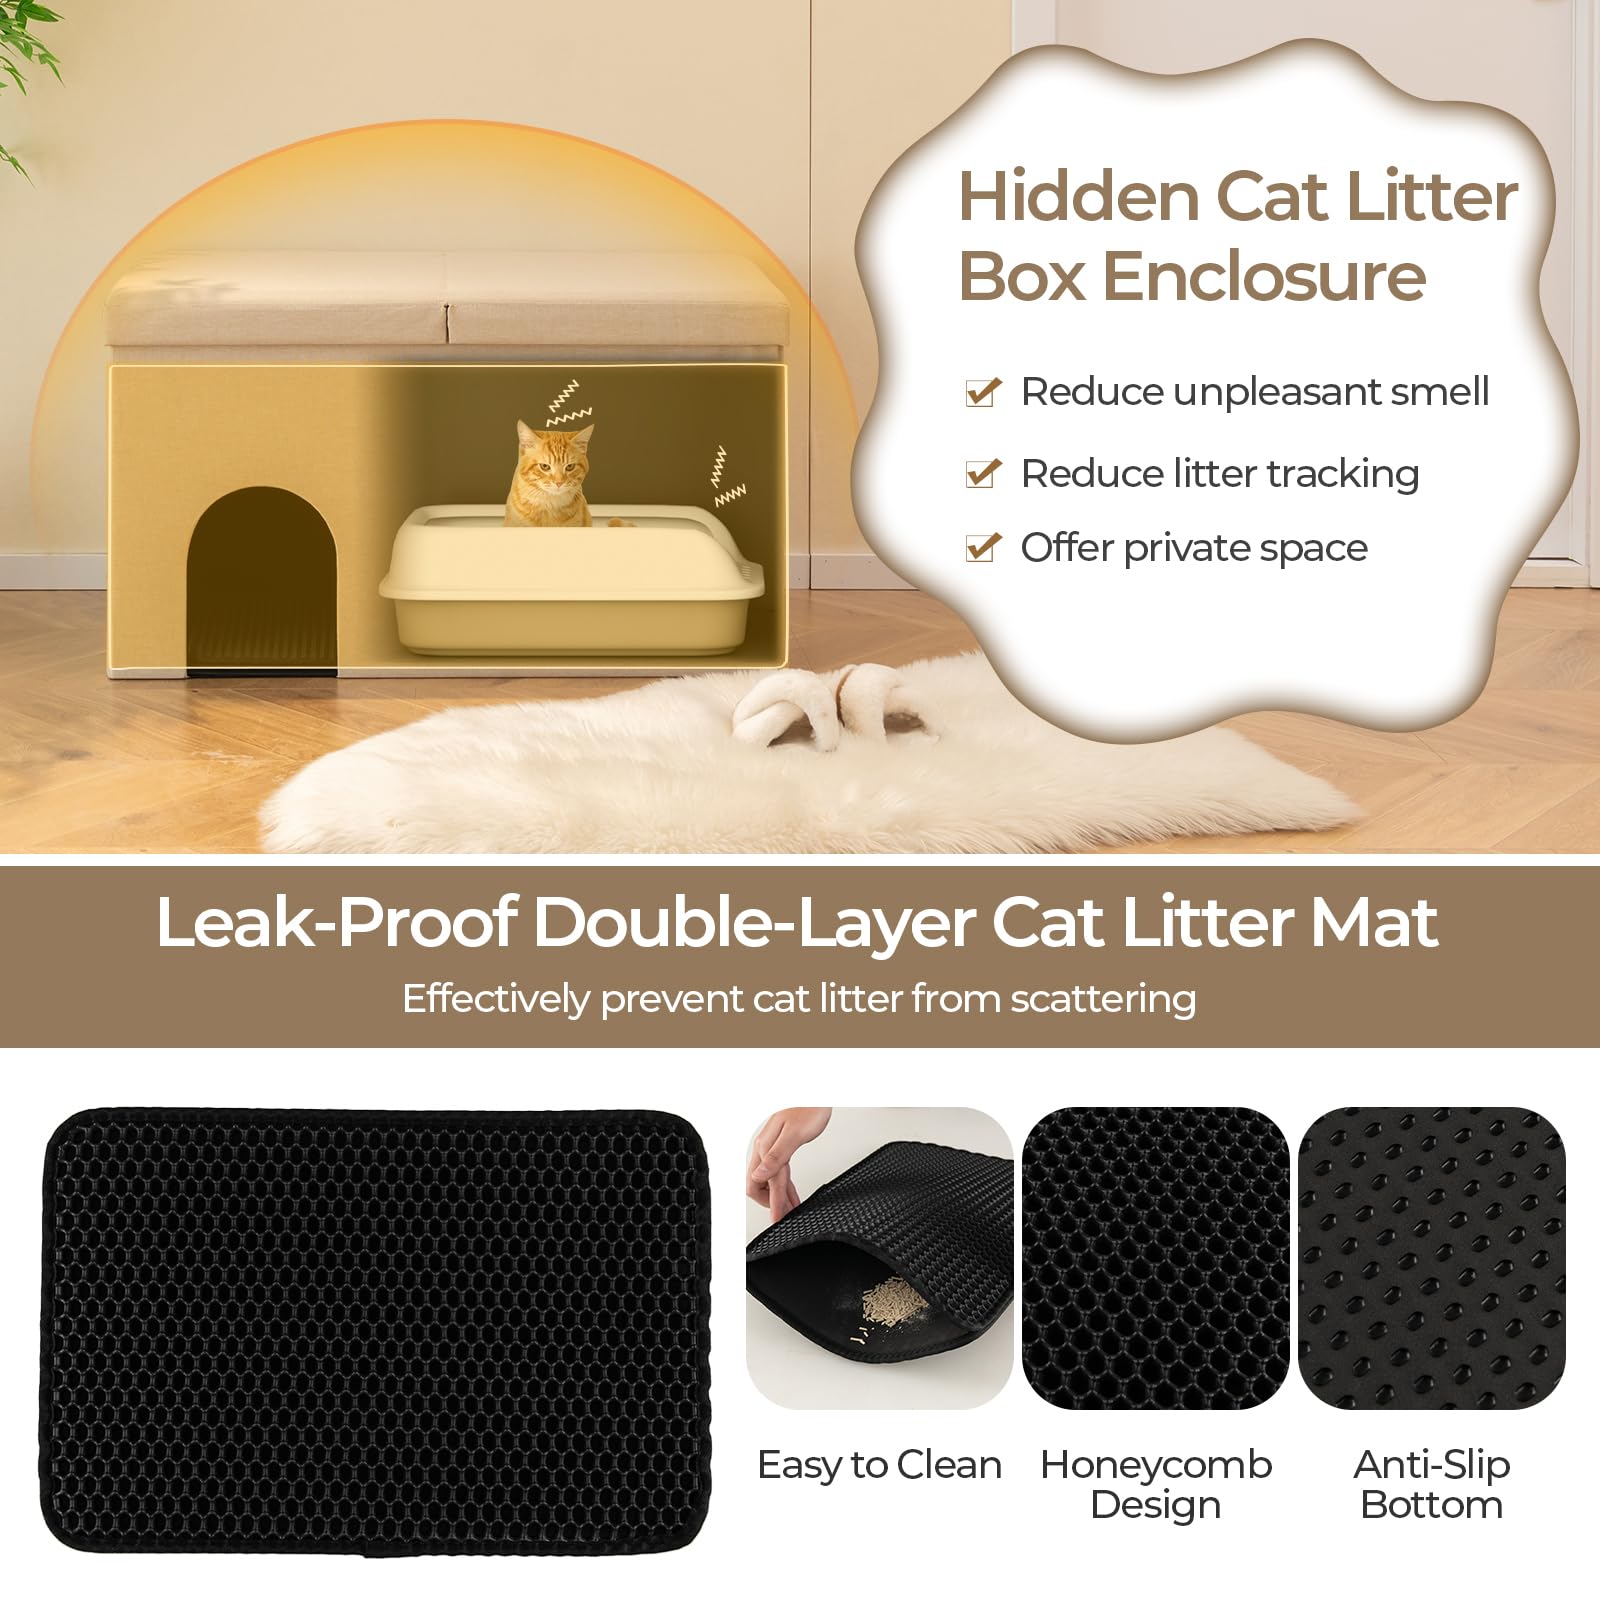 Giantex Cat Litter Box Enclosure - Hidden Cat Litter Box Furniture Ottoman